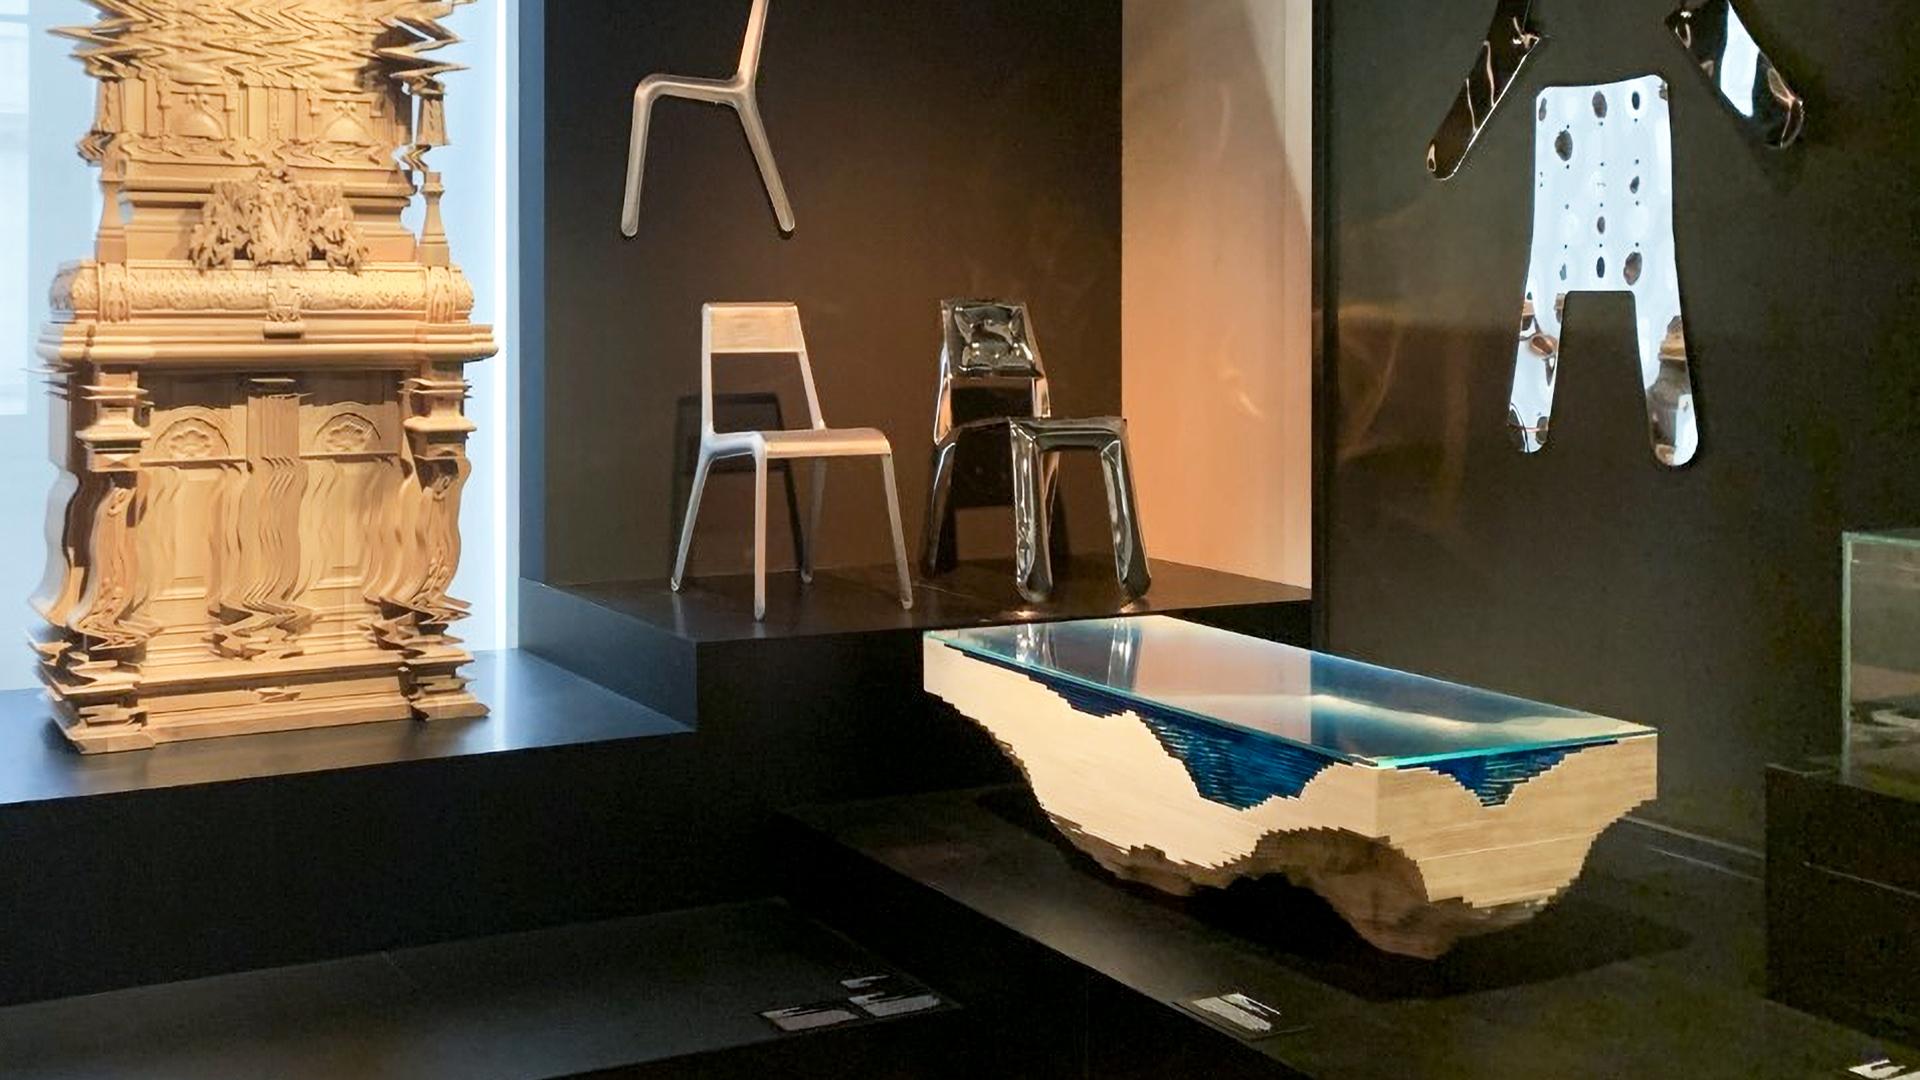 Abyss ist ein einzigartiges, modernes Couchtisch-Design des britischen Designers Christopher Duffy.  Es ist sowohl ein Kunstmöbel als auch ein traditionelles Möbelstück.

Duffy wirft einen Blick nach unten - in die Tiefen des Ozeans, um einen